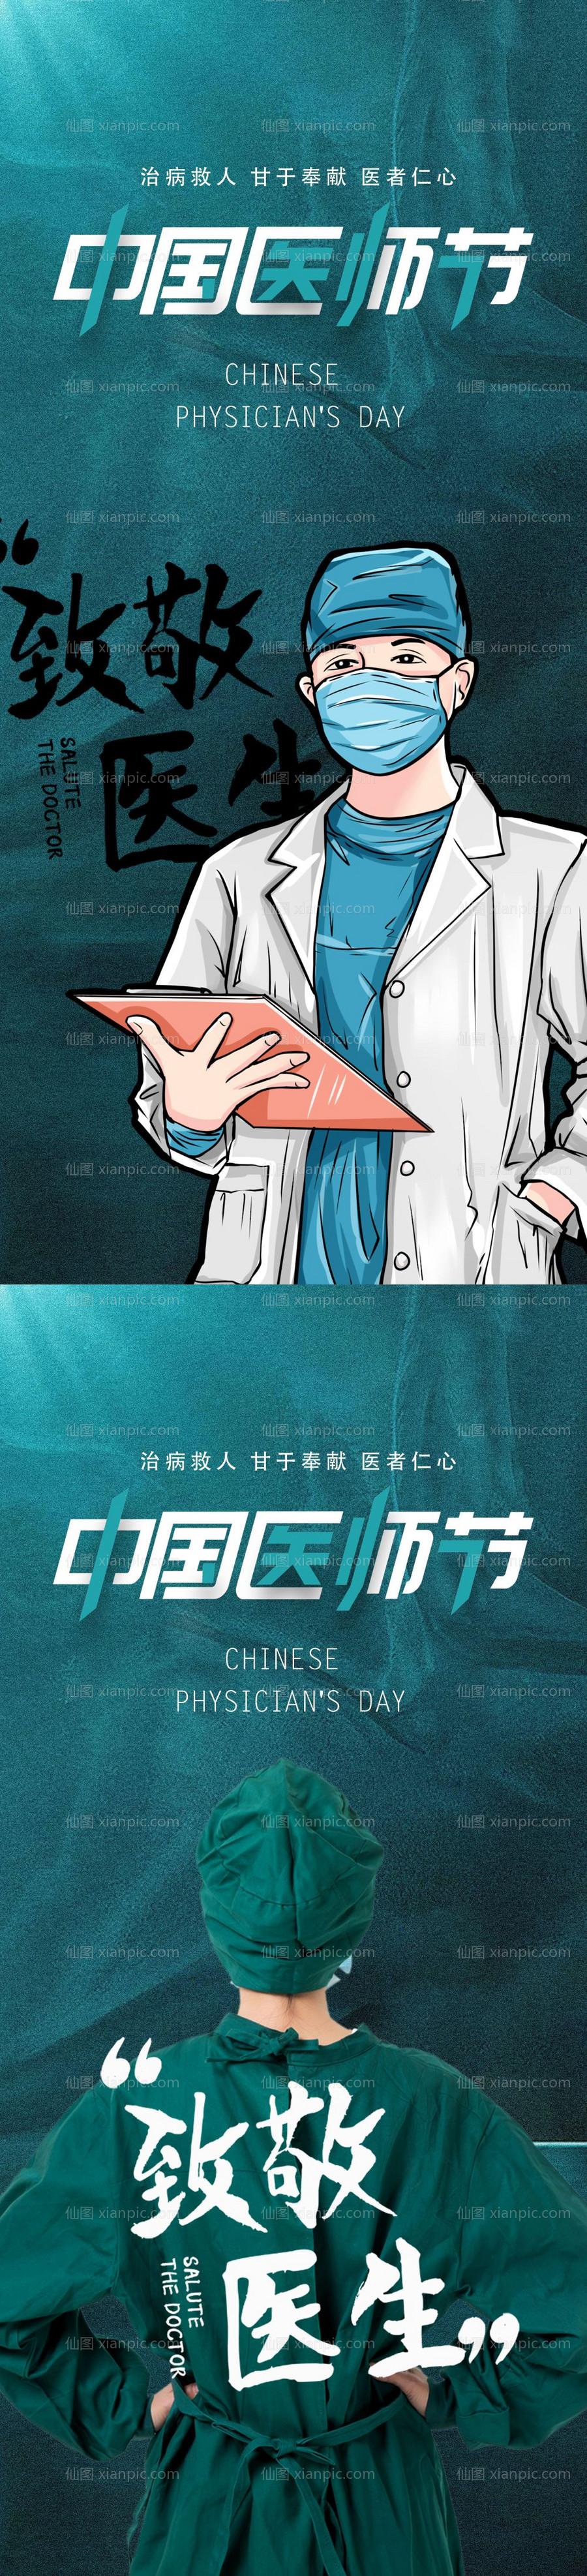 素材乐-中国医师节海报